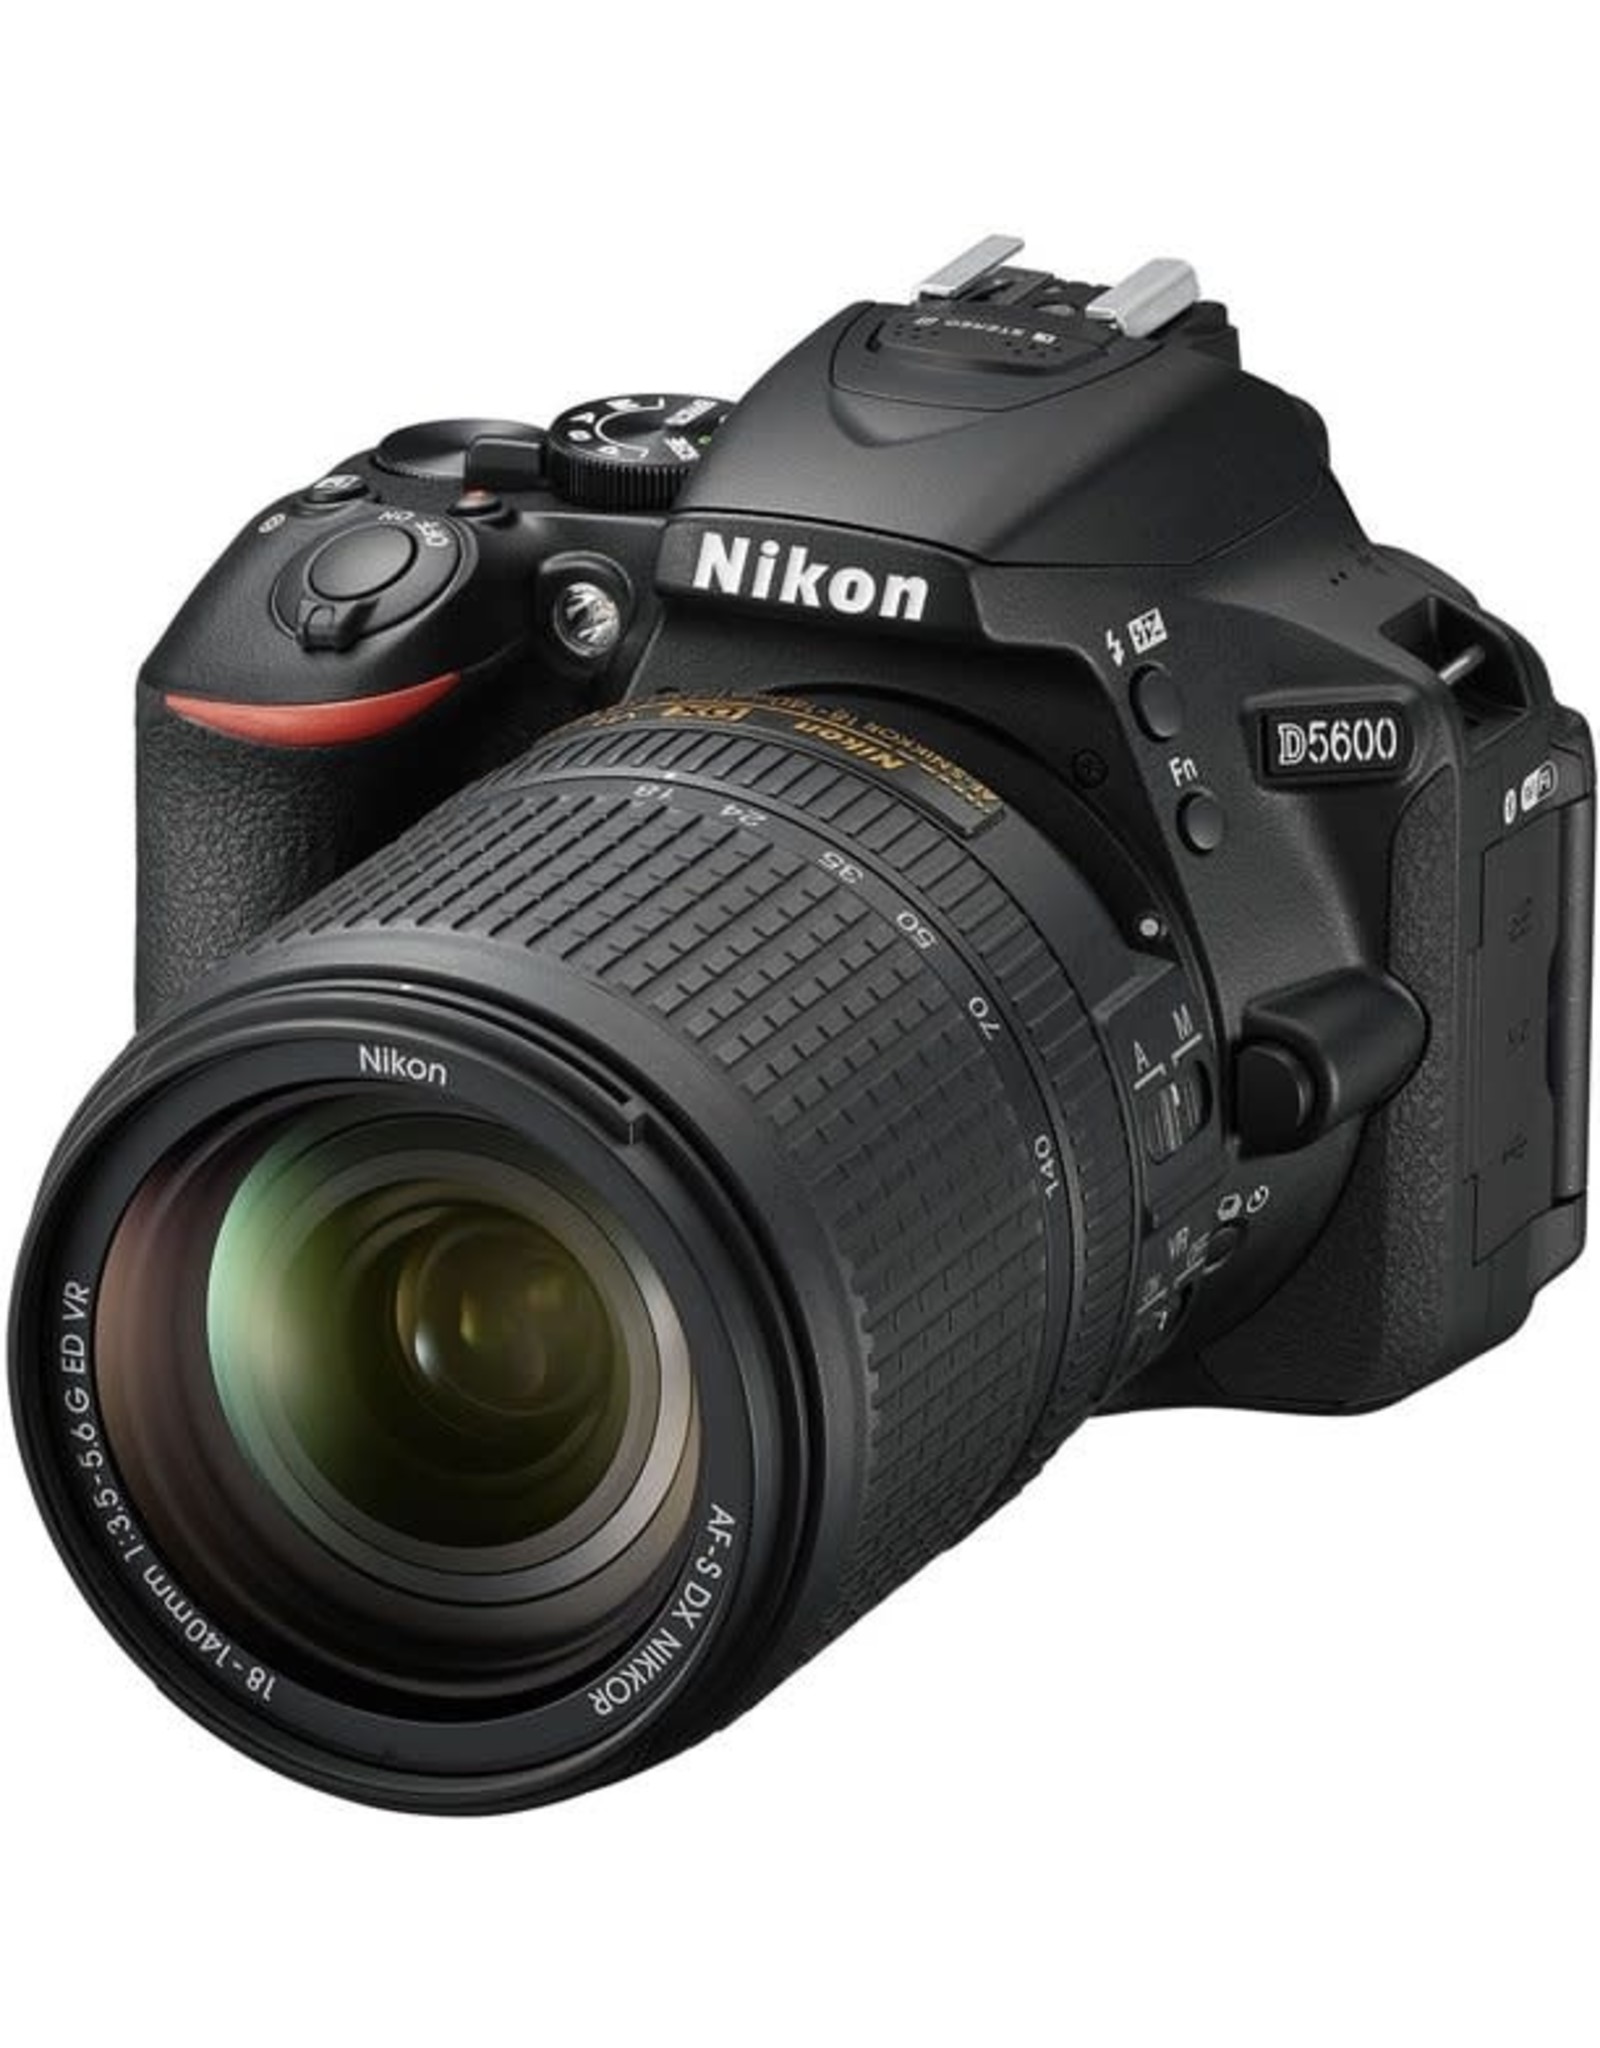 Bạn đang tìm kiếm đánh giá về máy ảnh Nikon D5600 với ống kính 18-140mm? Hãy tham khảo những đánh giá chân thành từ các chuyên gia và người dùng có kinh nghiệm trên trang web của chúng tôi. Bạn sẽ tìm thấy những thông tin hữu ích và đáng tin cậy nhất. 